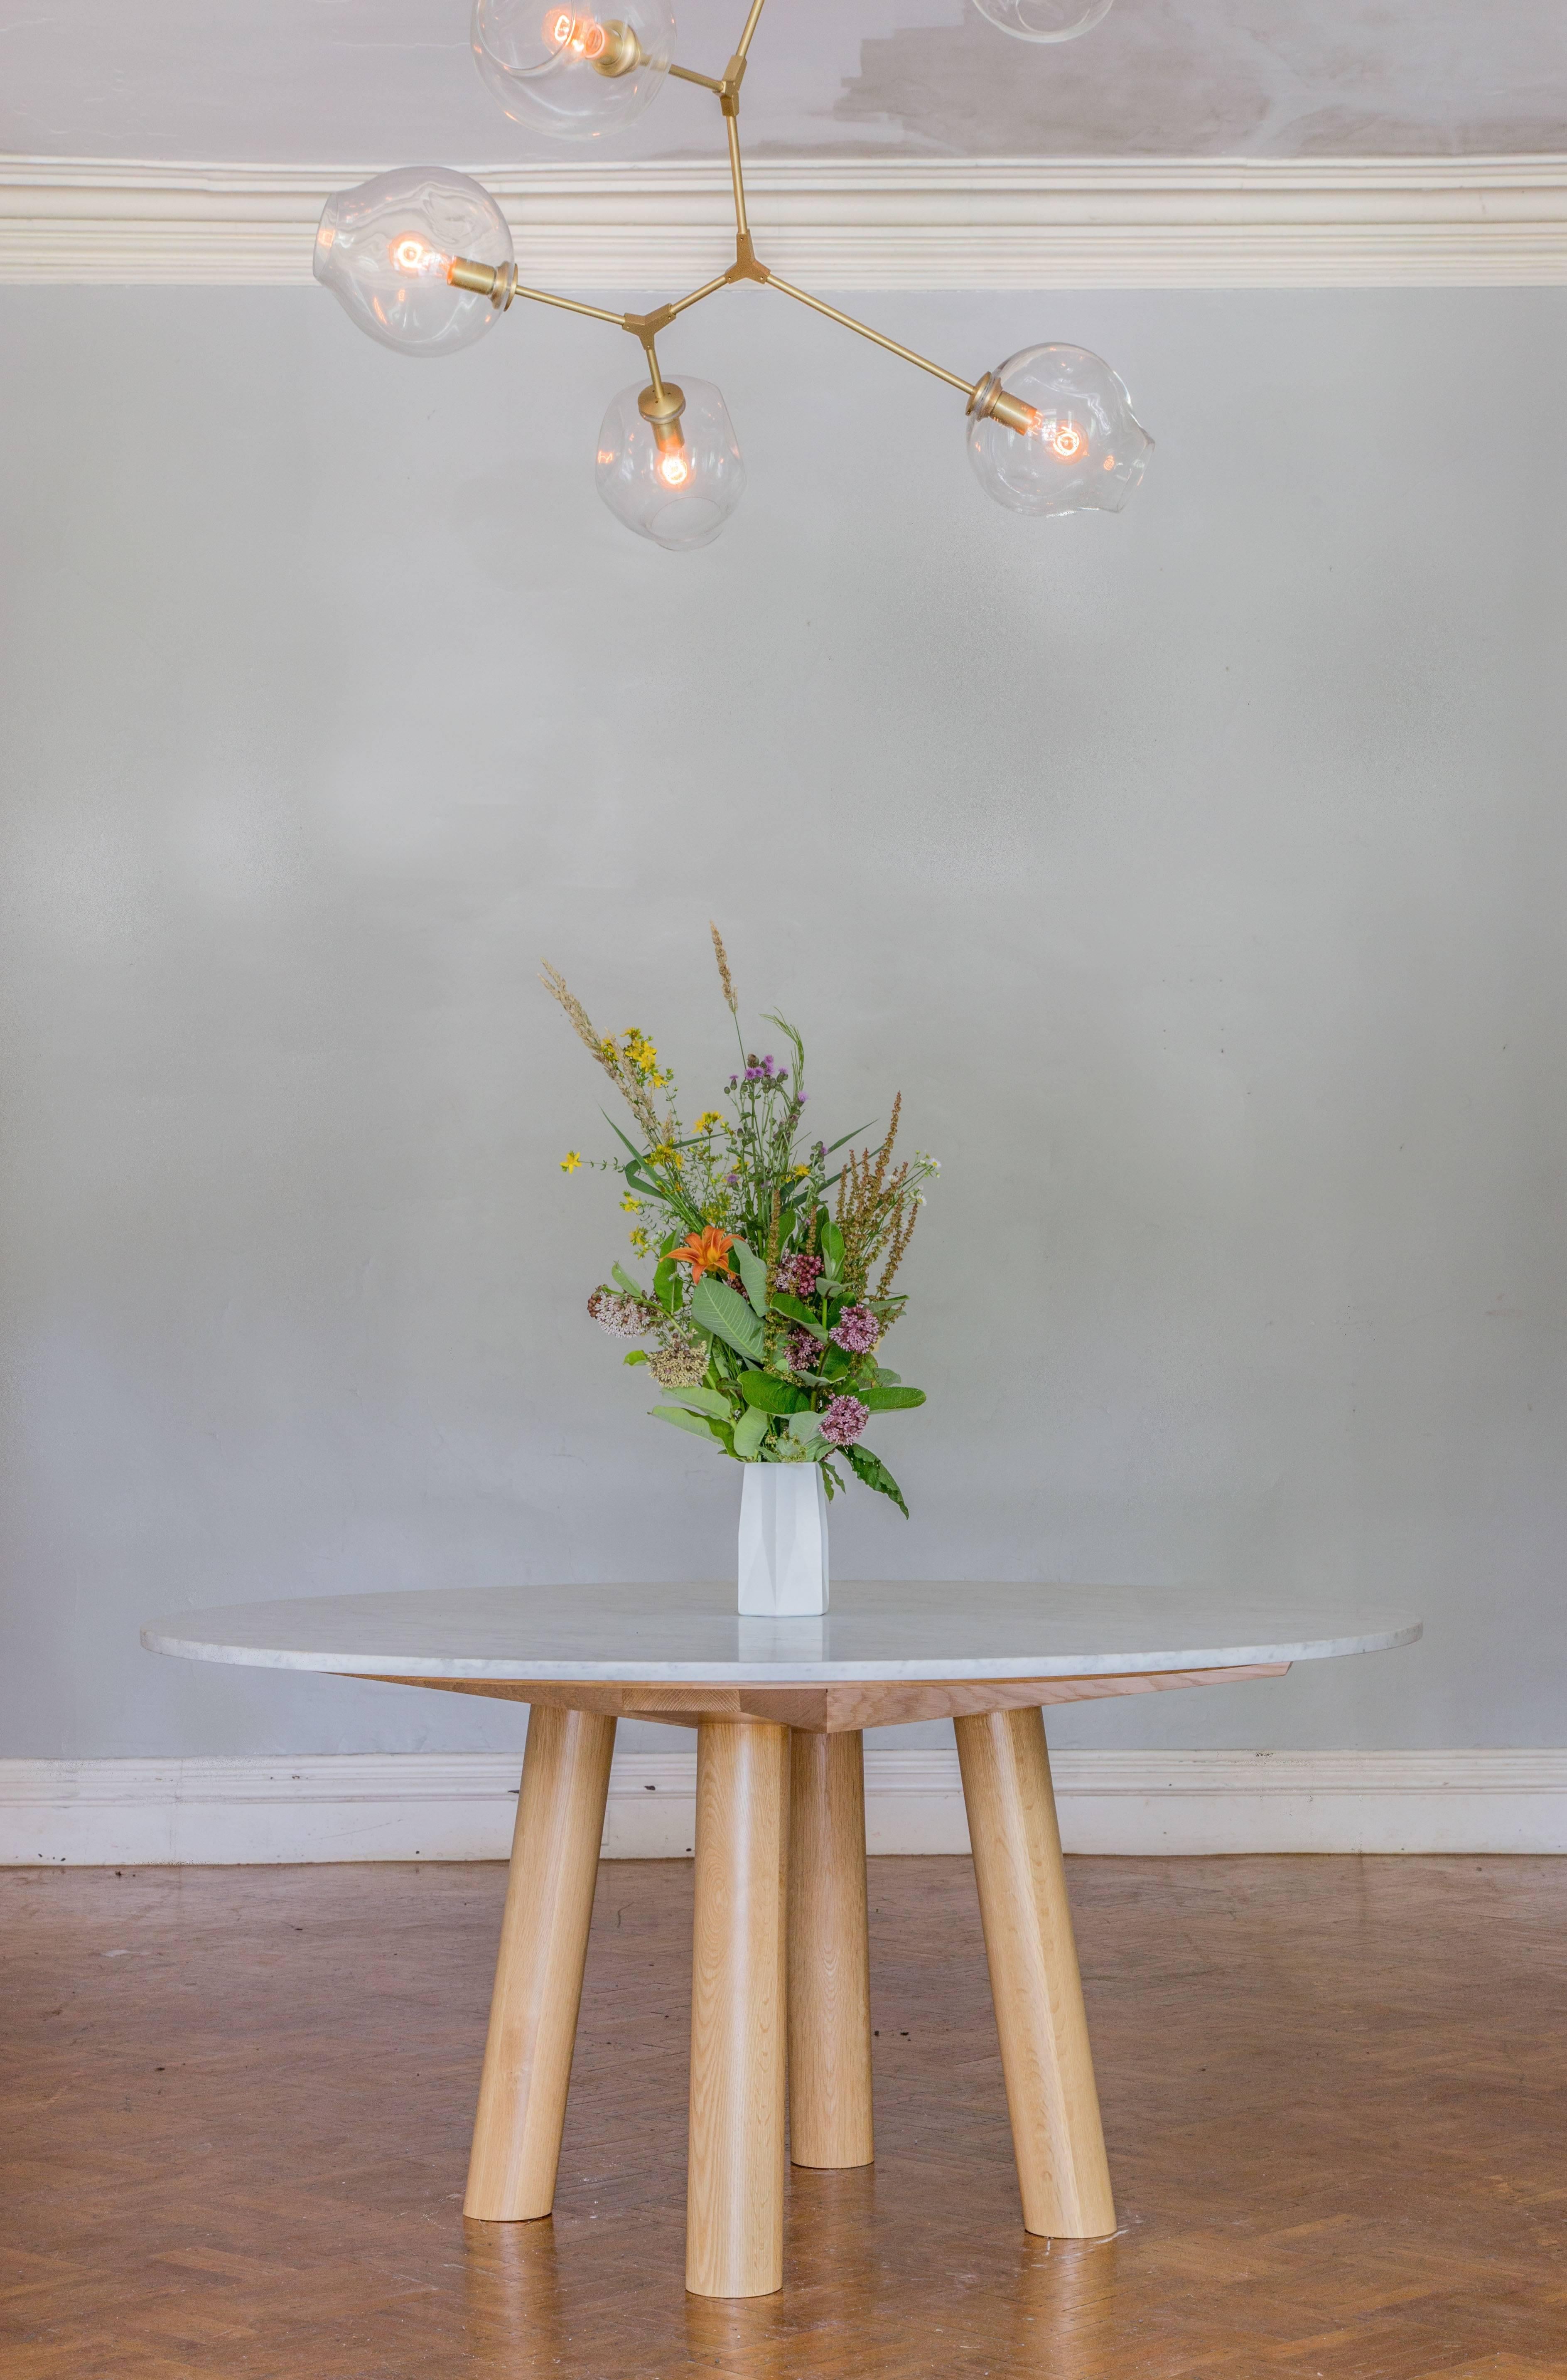 Dieser moderne, minimalistische Esstisch verfügt über runde Beine mit großem Durchmesser und kühne Gestellstützen, auf denen eine Platte aus Stein oder Hartholz ruht. Die Tischplatte weist ein Holzoberflächendetail auf, das die Platte zum Sockel